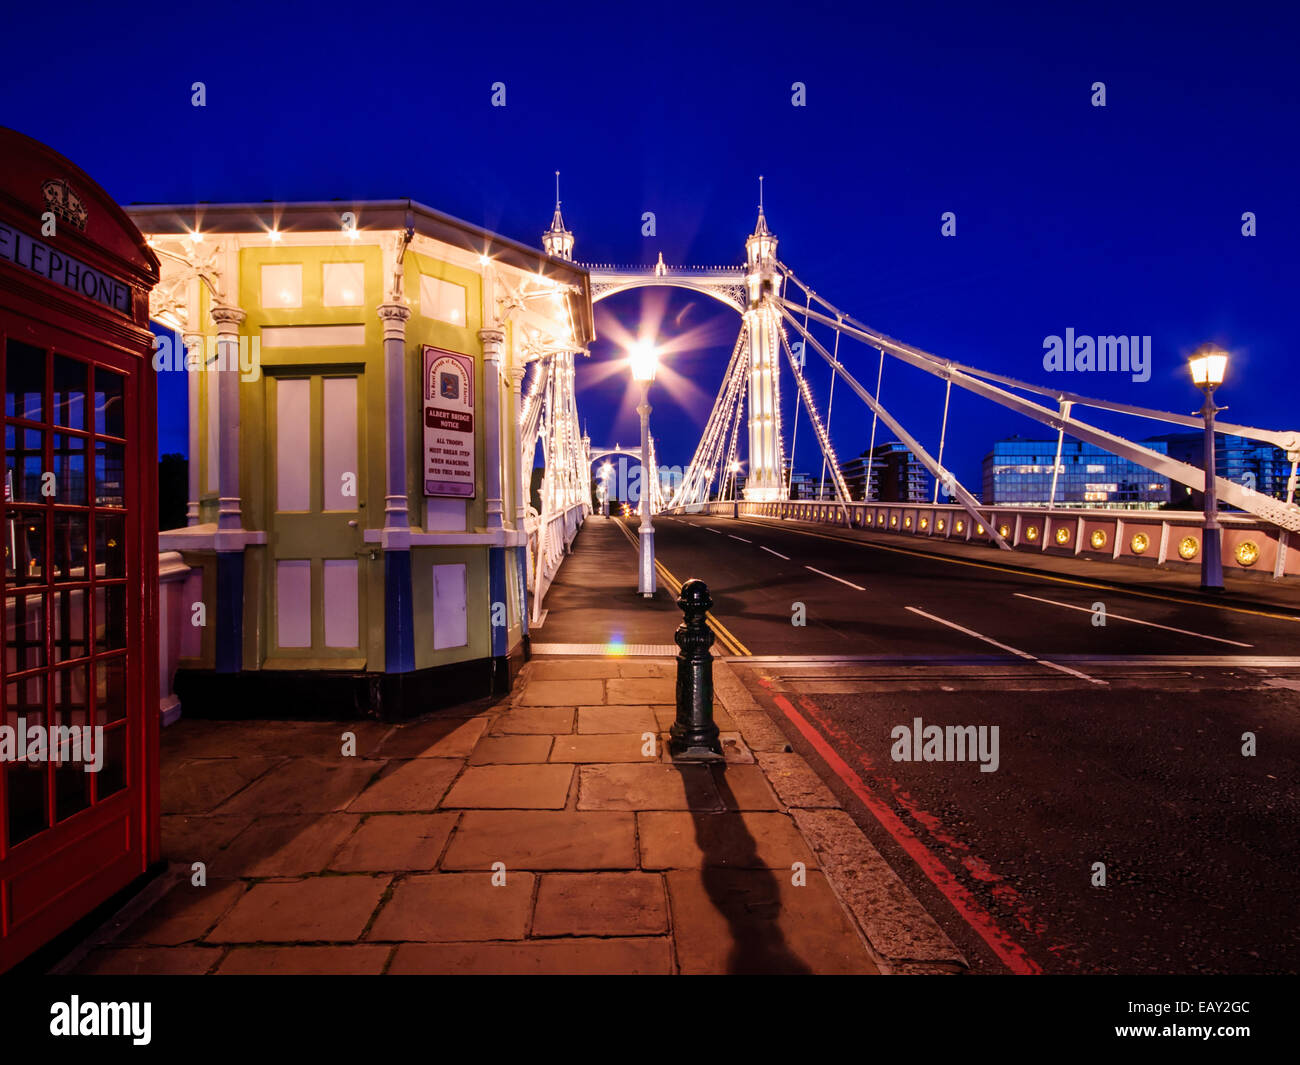 Albert Bridge at night. Stock Photo